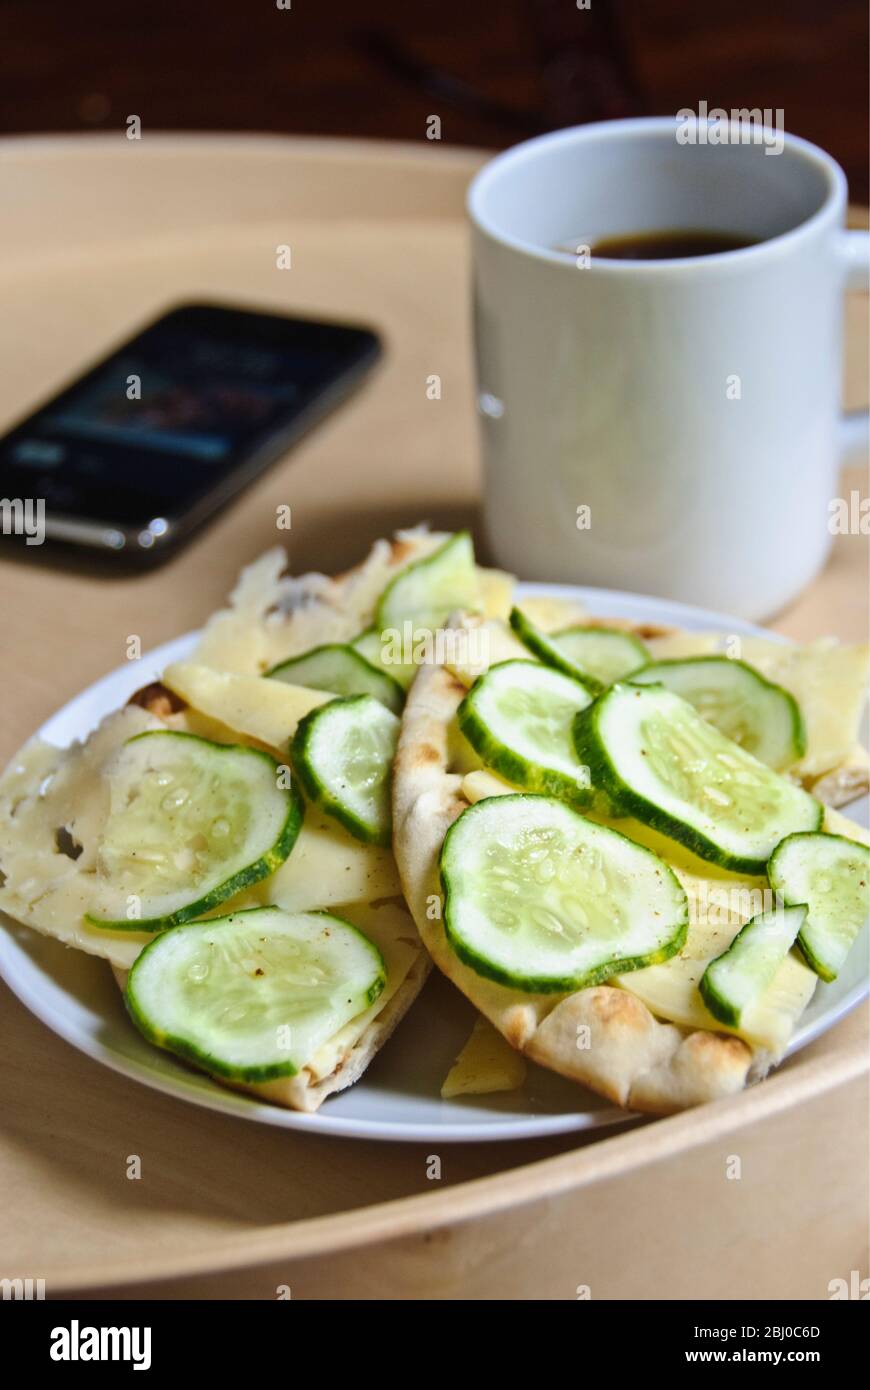 Snack skandinavischen Fladenbrot, mit dünn geschnittenen schwedischen Käse und Gurkenscheiben, bestreut mit Kräutersalz, mit einer Tasse schwarzen Kaffee und iphone o Stockfoto